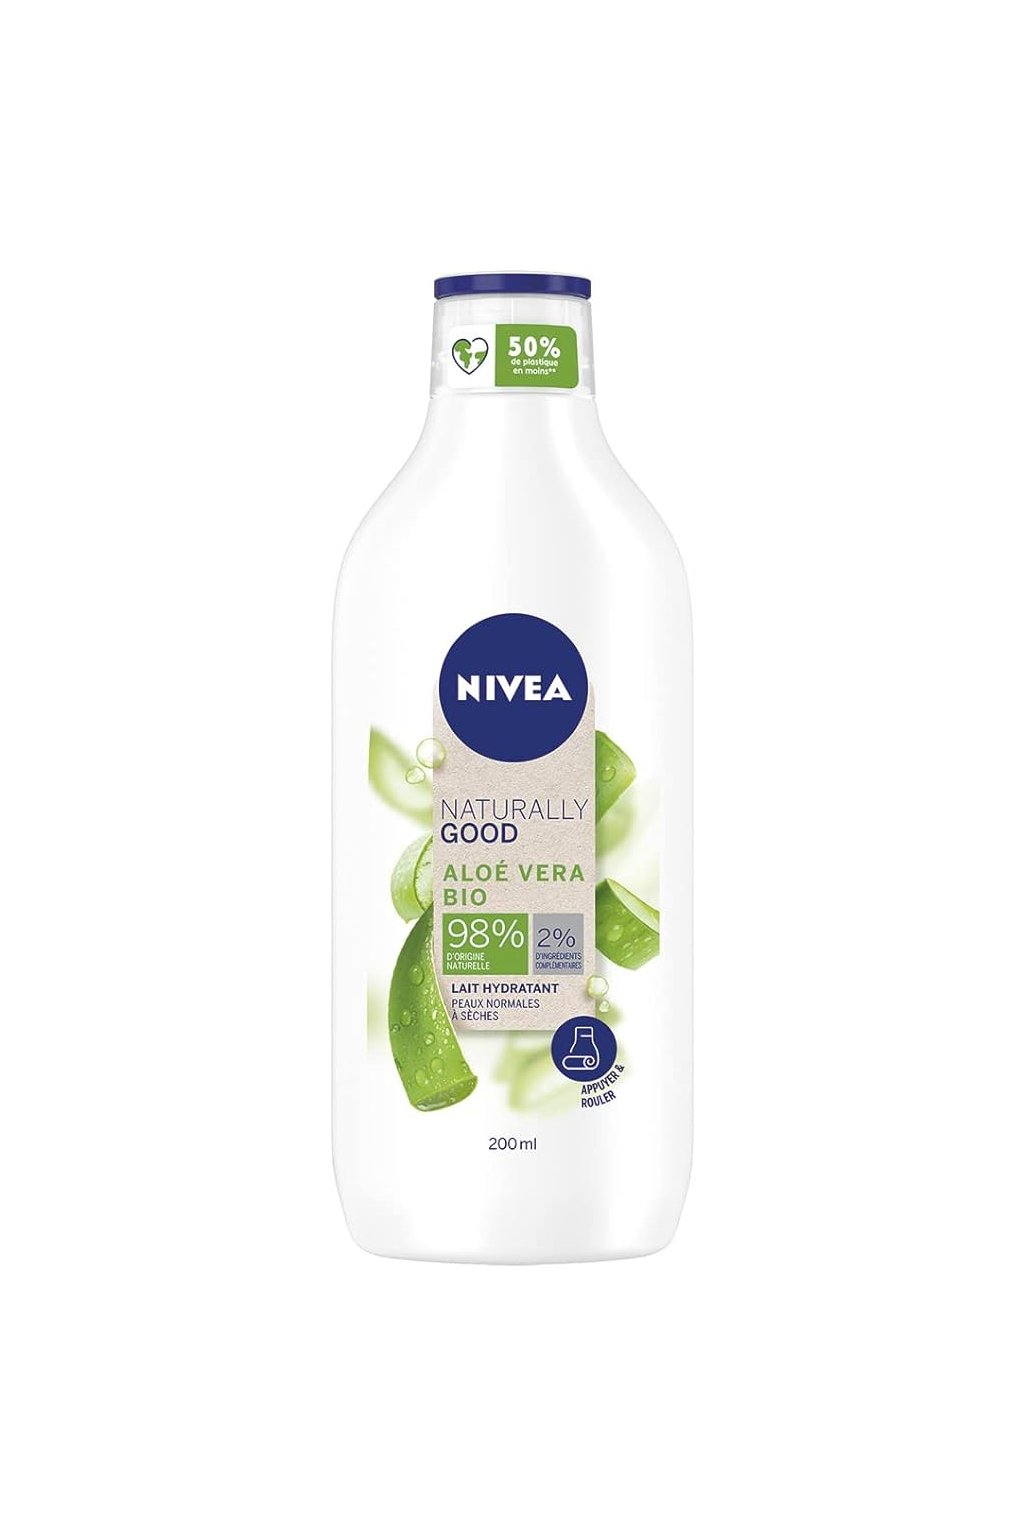 Nivea, Bio hydratační tělové mléko s Aloe Vera, 200 ml